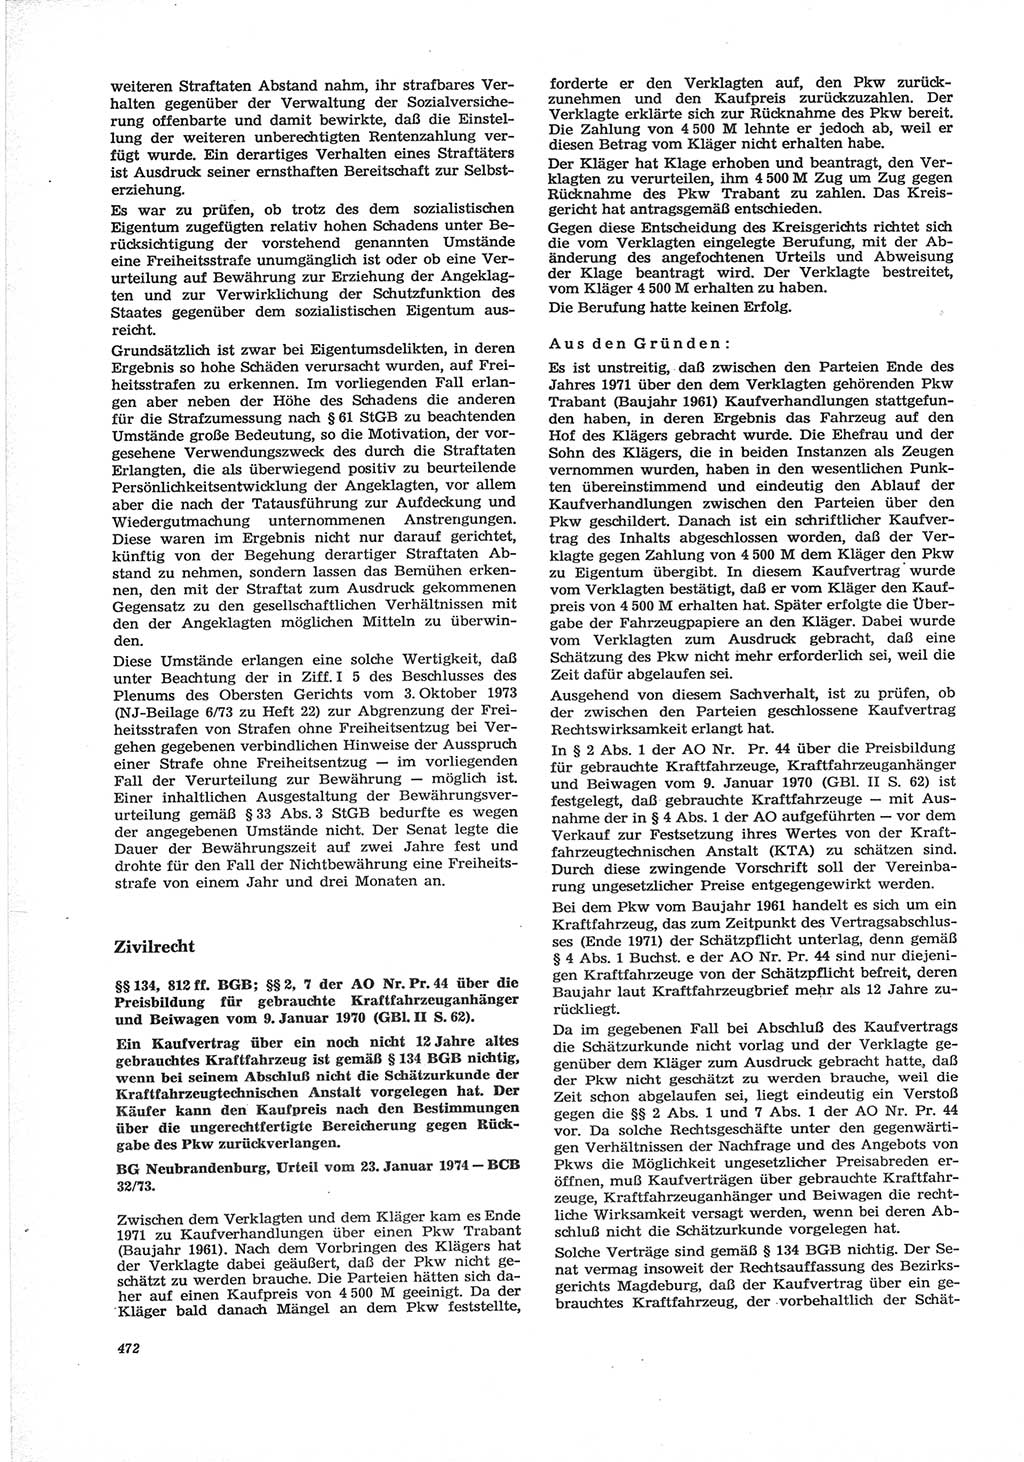 Neue Justiz (NJ), Zeitschrift für Recht und Rechtswissenschaft [Deutsche Demokratische Republik (DDR)], 28. Jahrgang 1974, Seite 472 (NJ DDR 1974, S. 472)